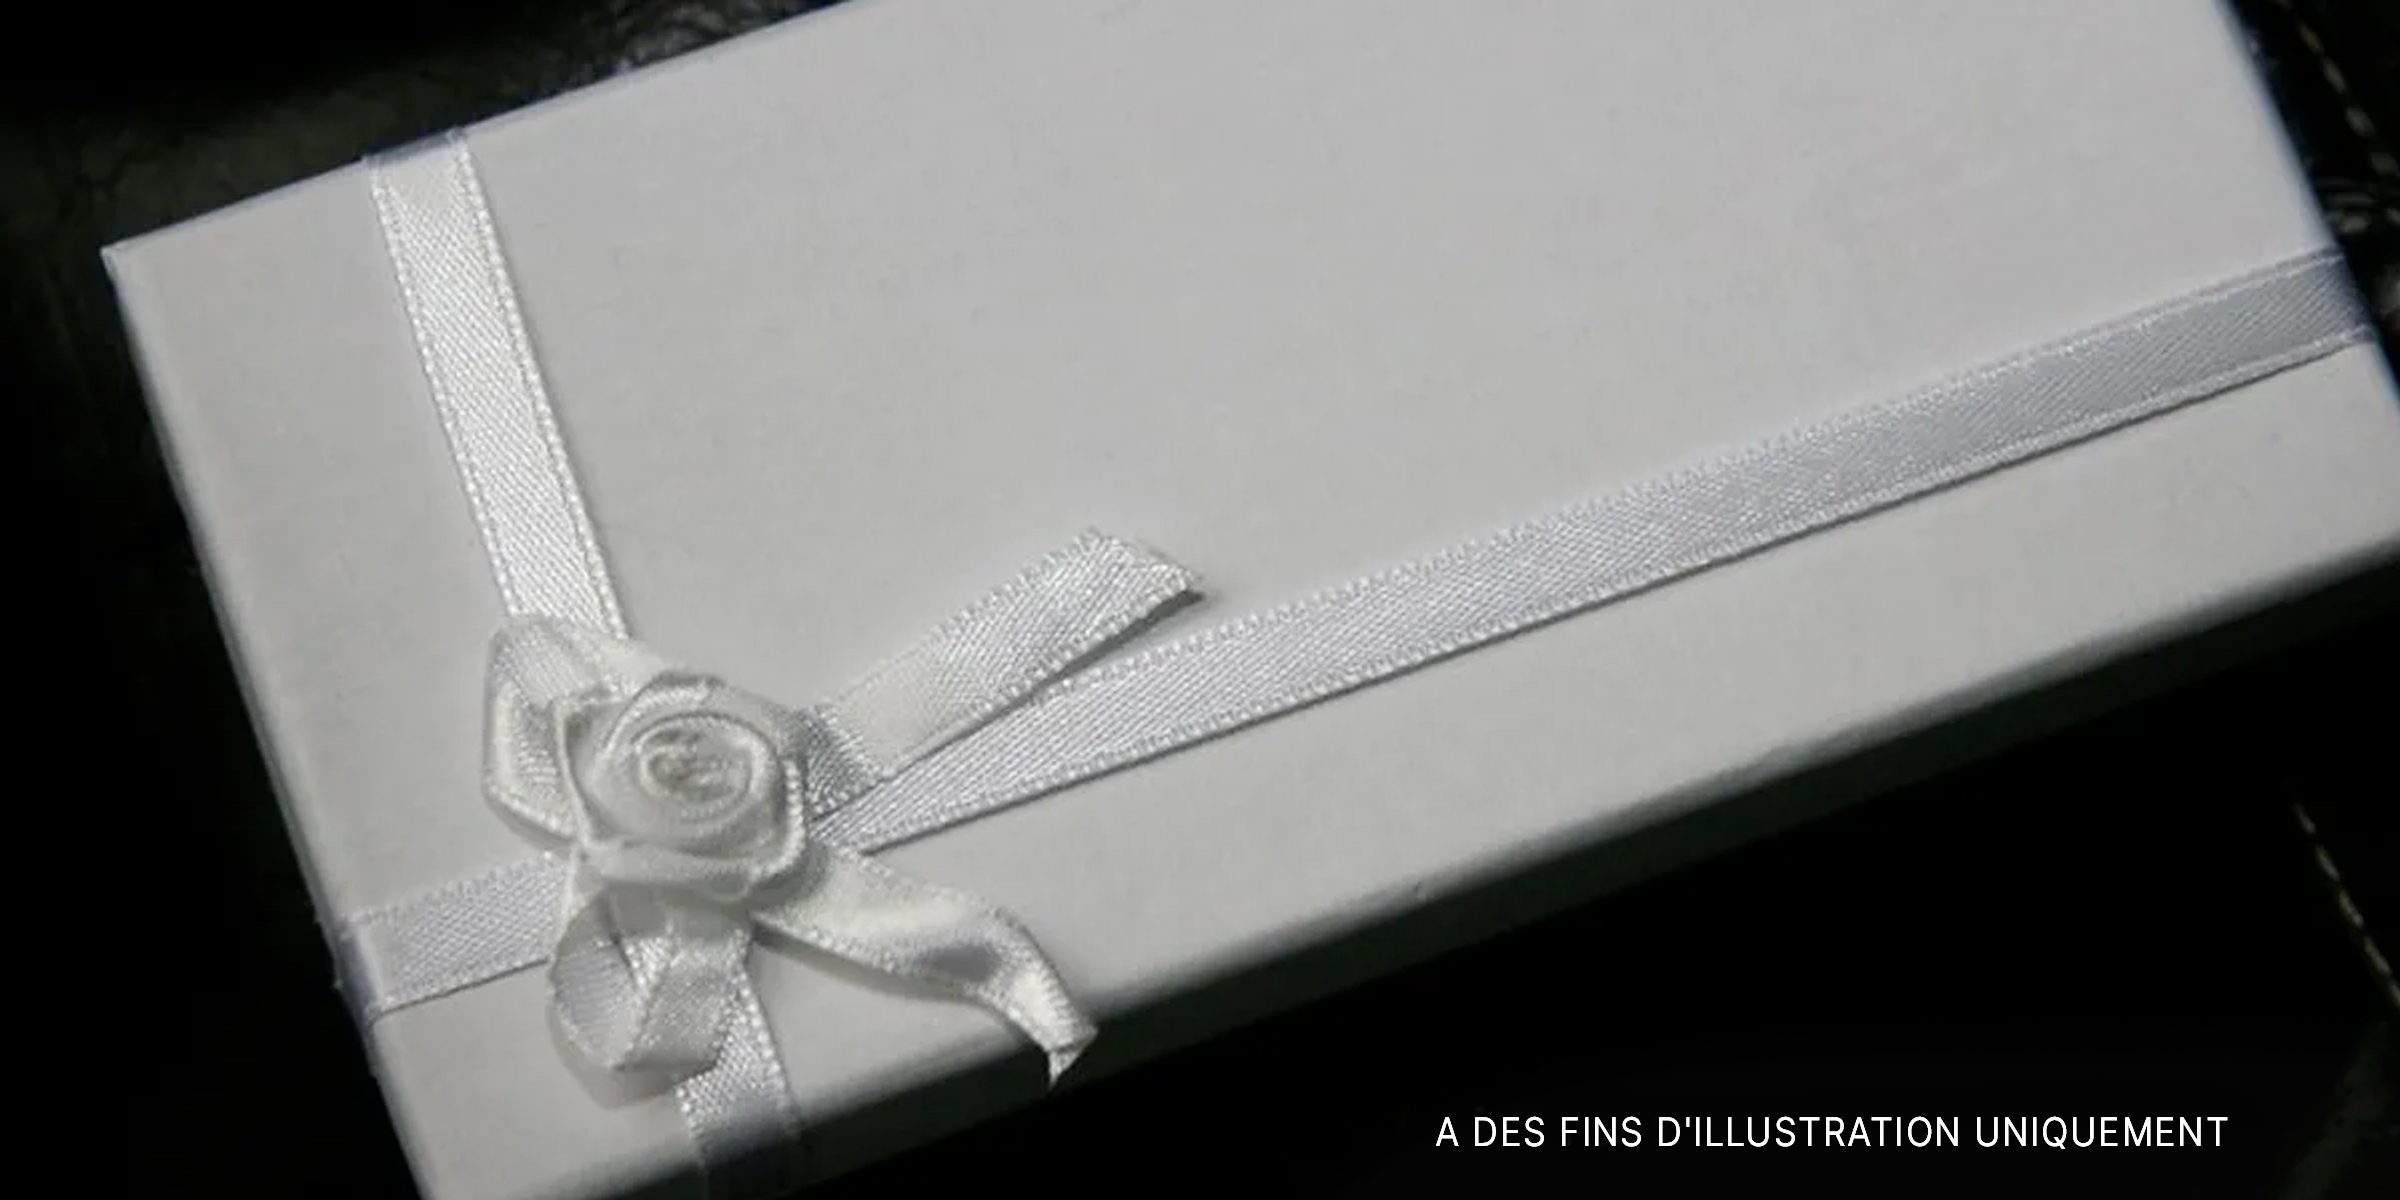 Un paquet cadeau emballé | Source : flickr.com/balleyne/CC BY-SA 2.0